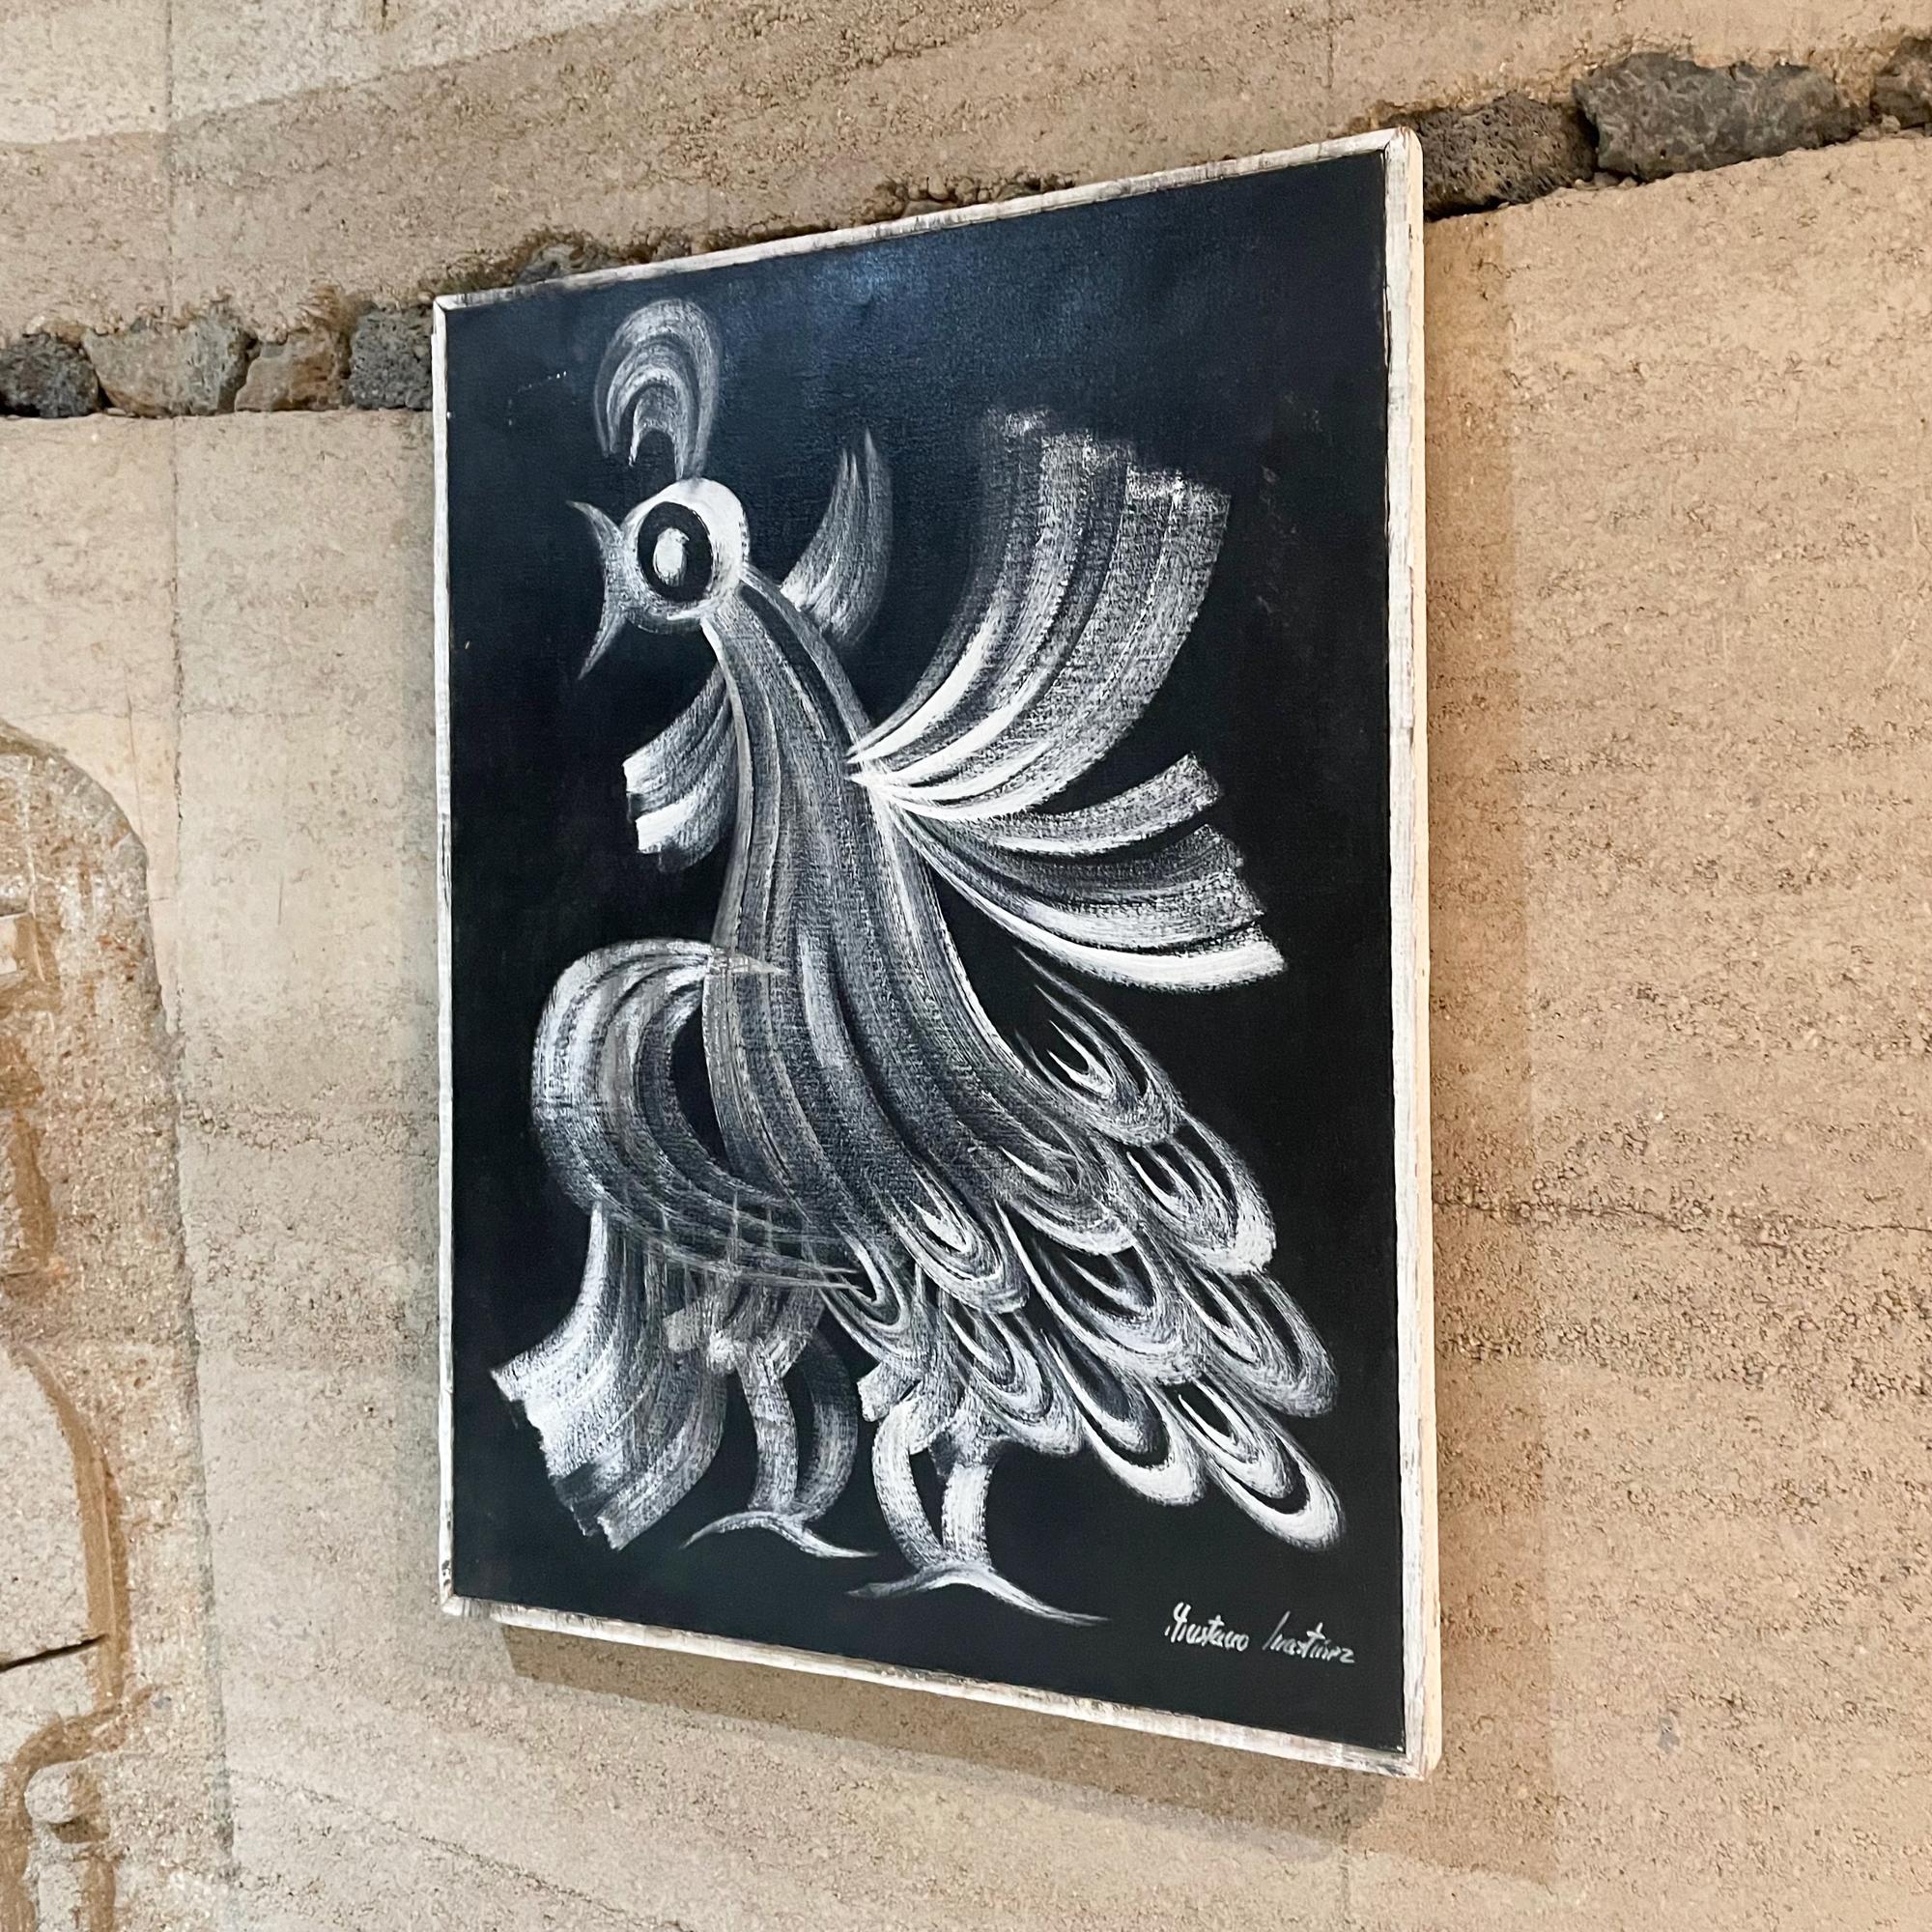 1970er Jahre Mexikanischer Modernismus Öl auf Leinwand Gemälde Mexiko  
unterzeichnete Gustavo Martinez.
Ein extravaganter Hahn ist das Thema.
24 H x 18 B x 1 T Zoll
Originaler unrestaurierter Vintage-Zustand. Originaler Holzrahmen. 
Der obere Teil